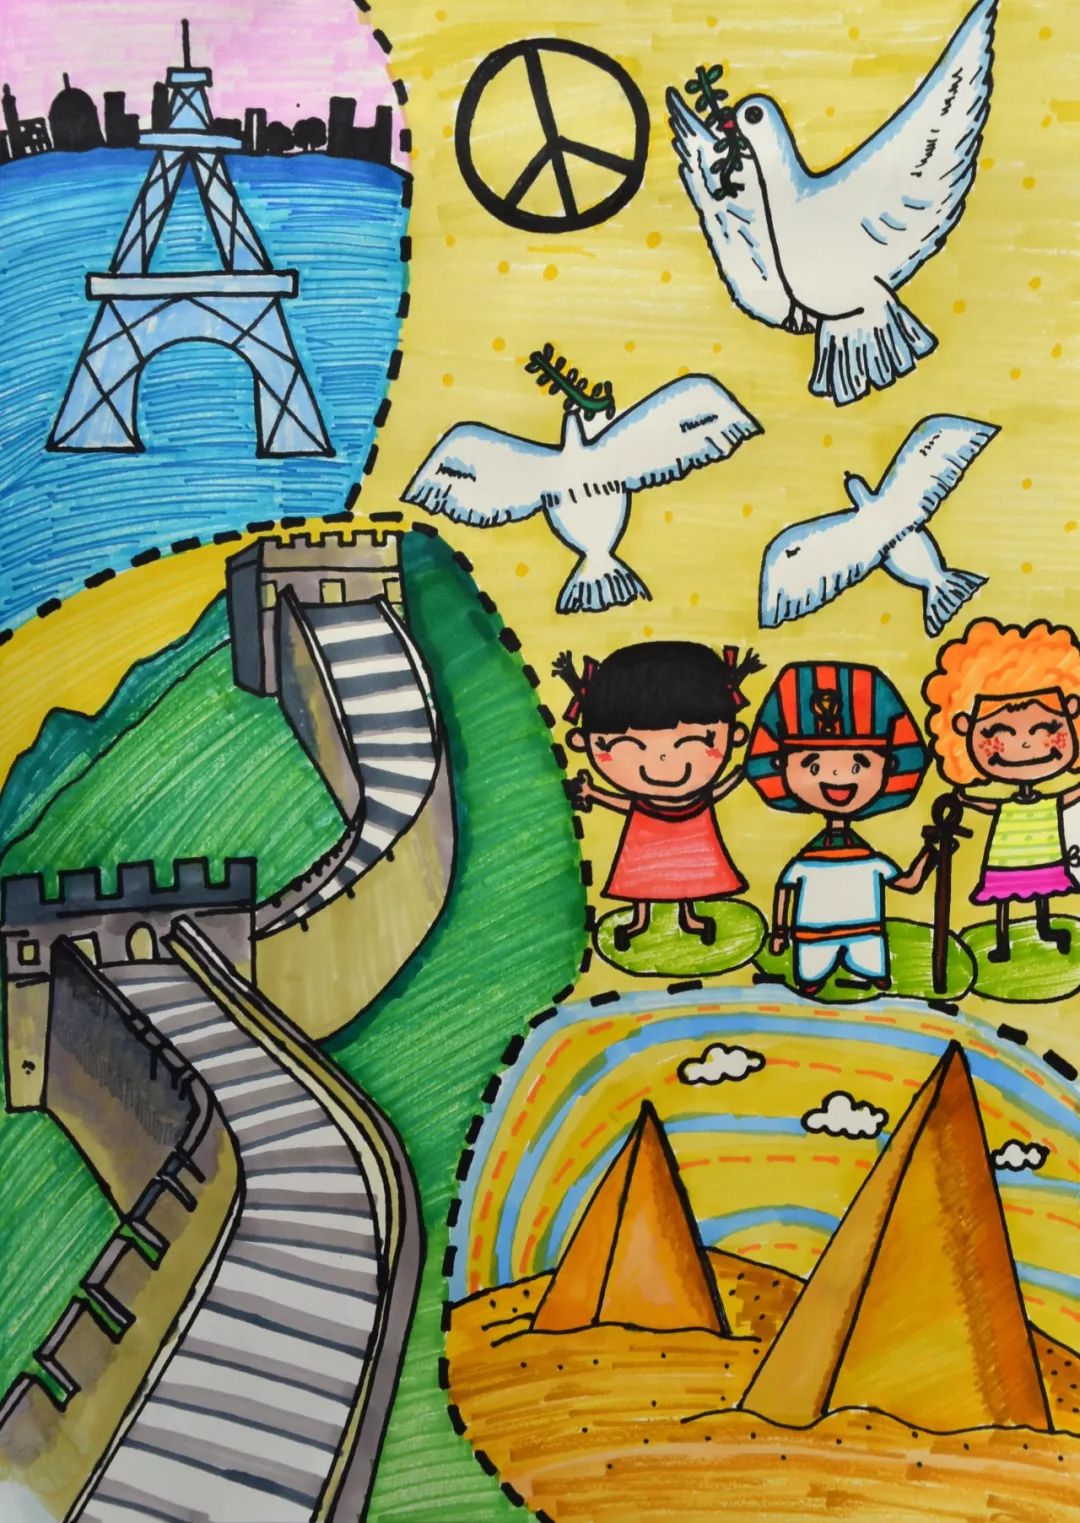 艺术组的美术老师们带着孩子们用图画表达"和平的未来",一幅幅天马行